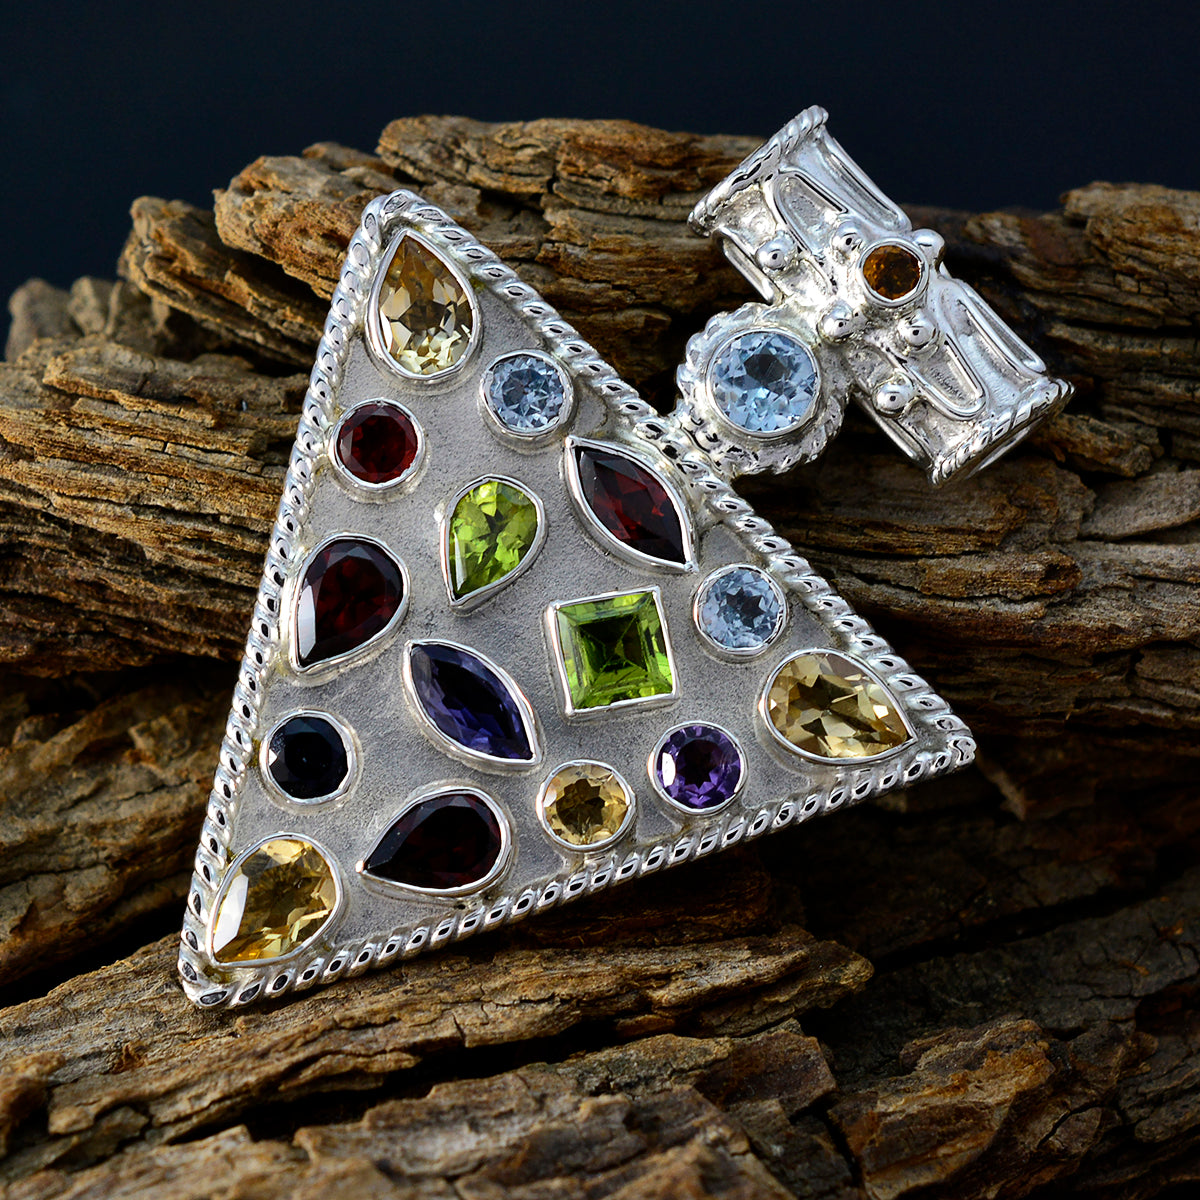 riyo хороший драгоценный камень многогранный многоцветный кулон из стерлингового серебра с несколькими камнями подарок для друга